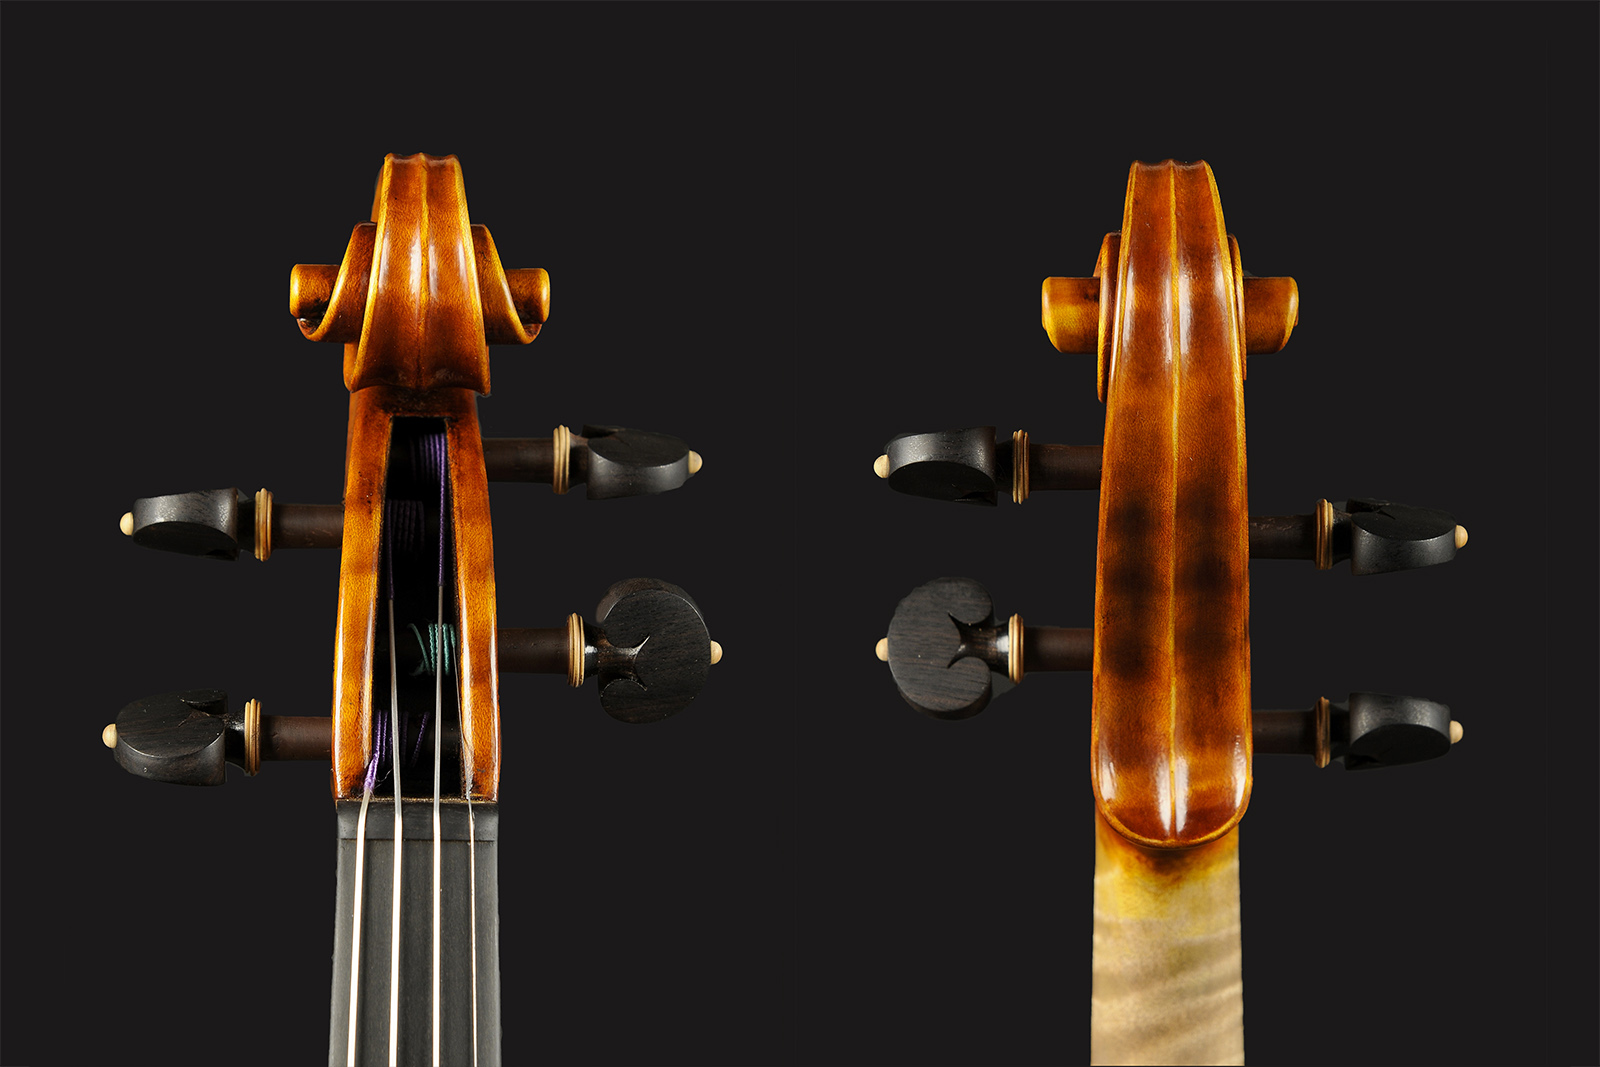 Stradivari & Del Gesù Stradivari & Mod. Del Gesù “The Twins“ - Image 6